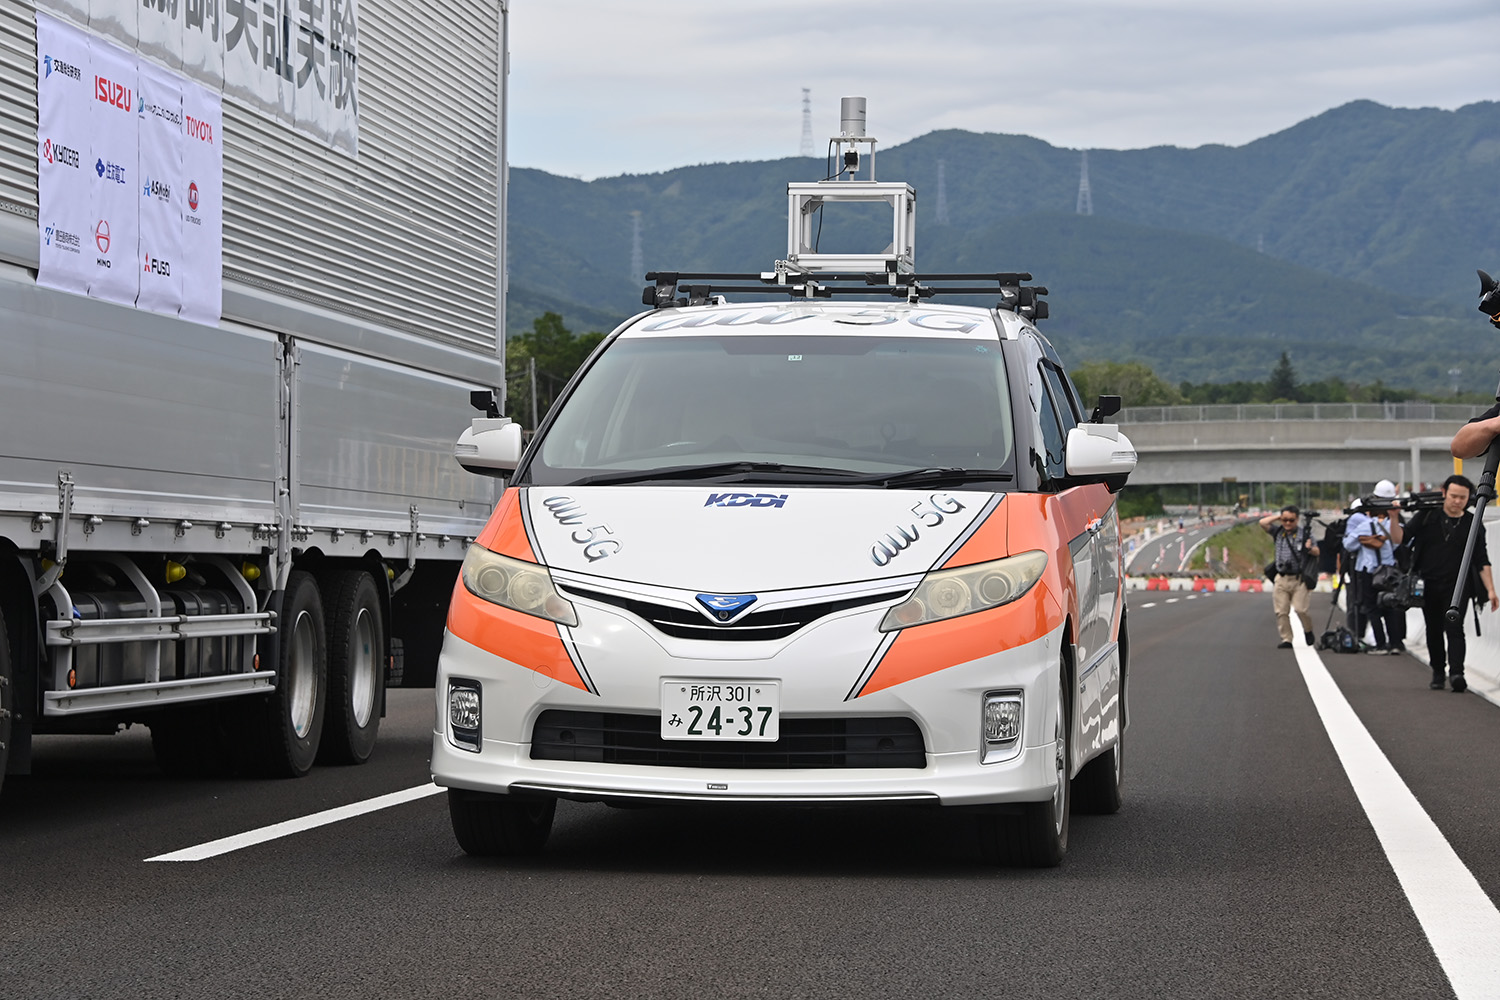 10もの企業が参加するNEXCO中日本が実施中の路車協調実験とは 〜 画像29